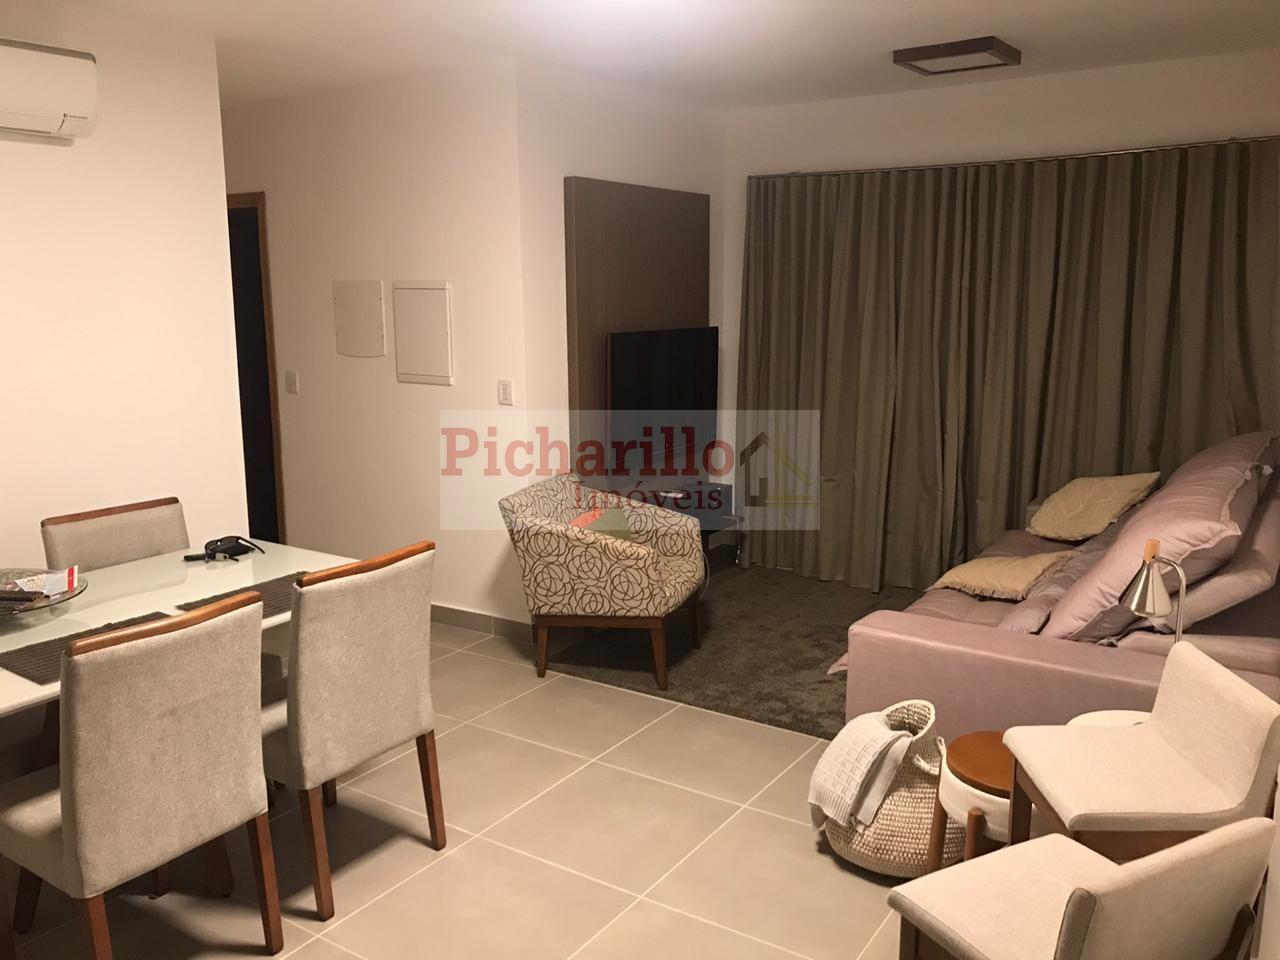 Apartamento com 2 dormitórios (1 suíte) à venda - Parque Faber Castell I - São Carlos/SP